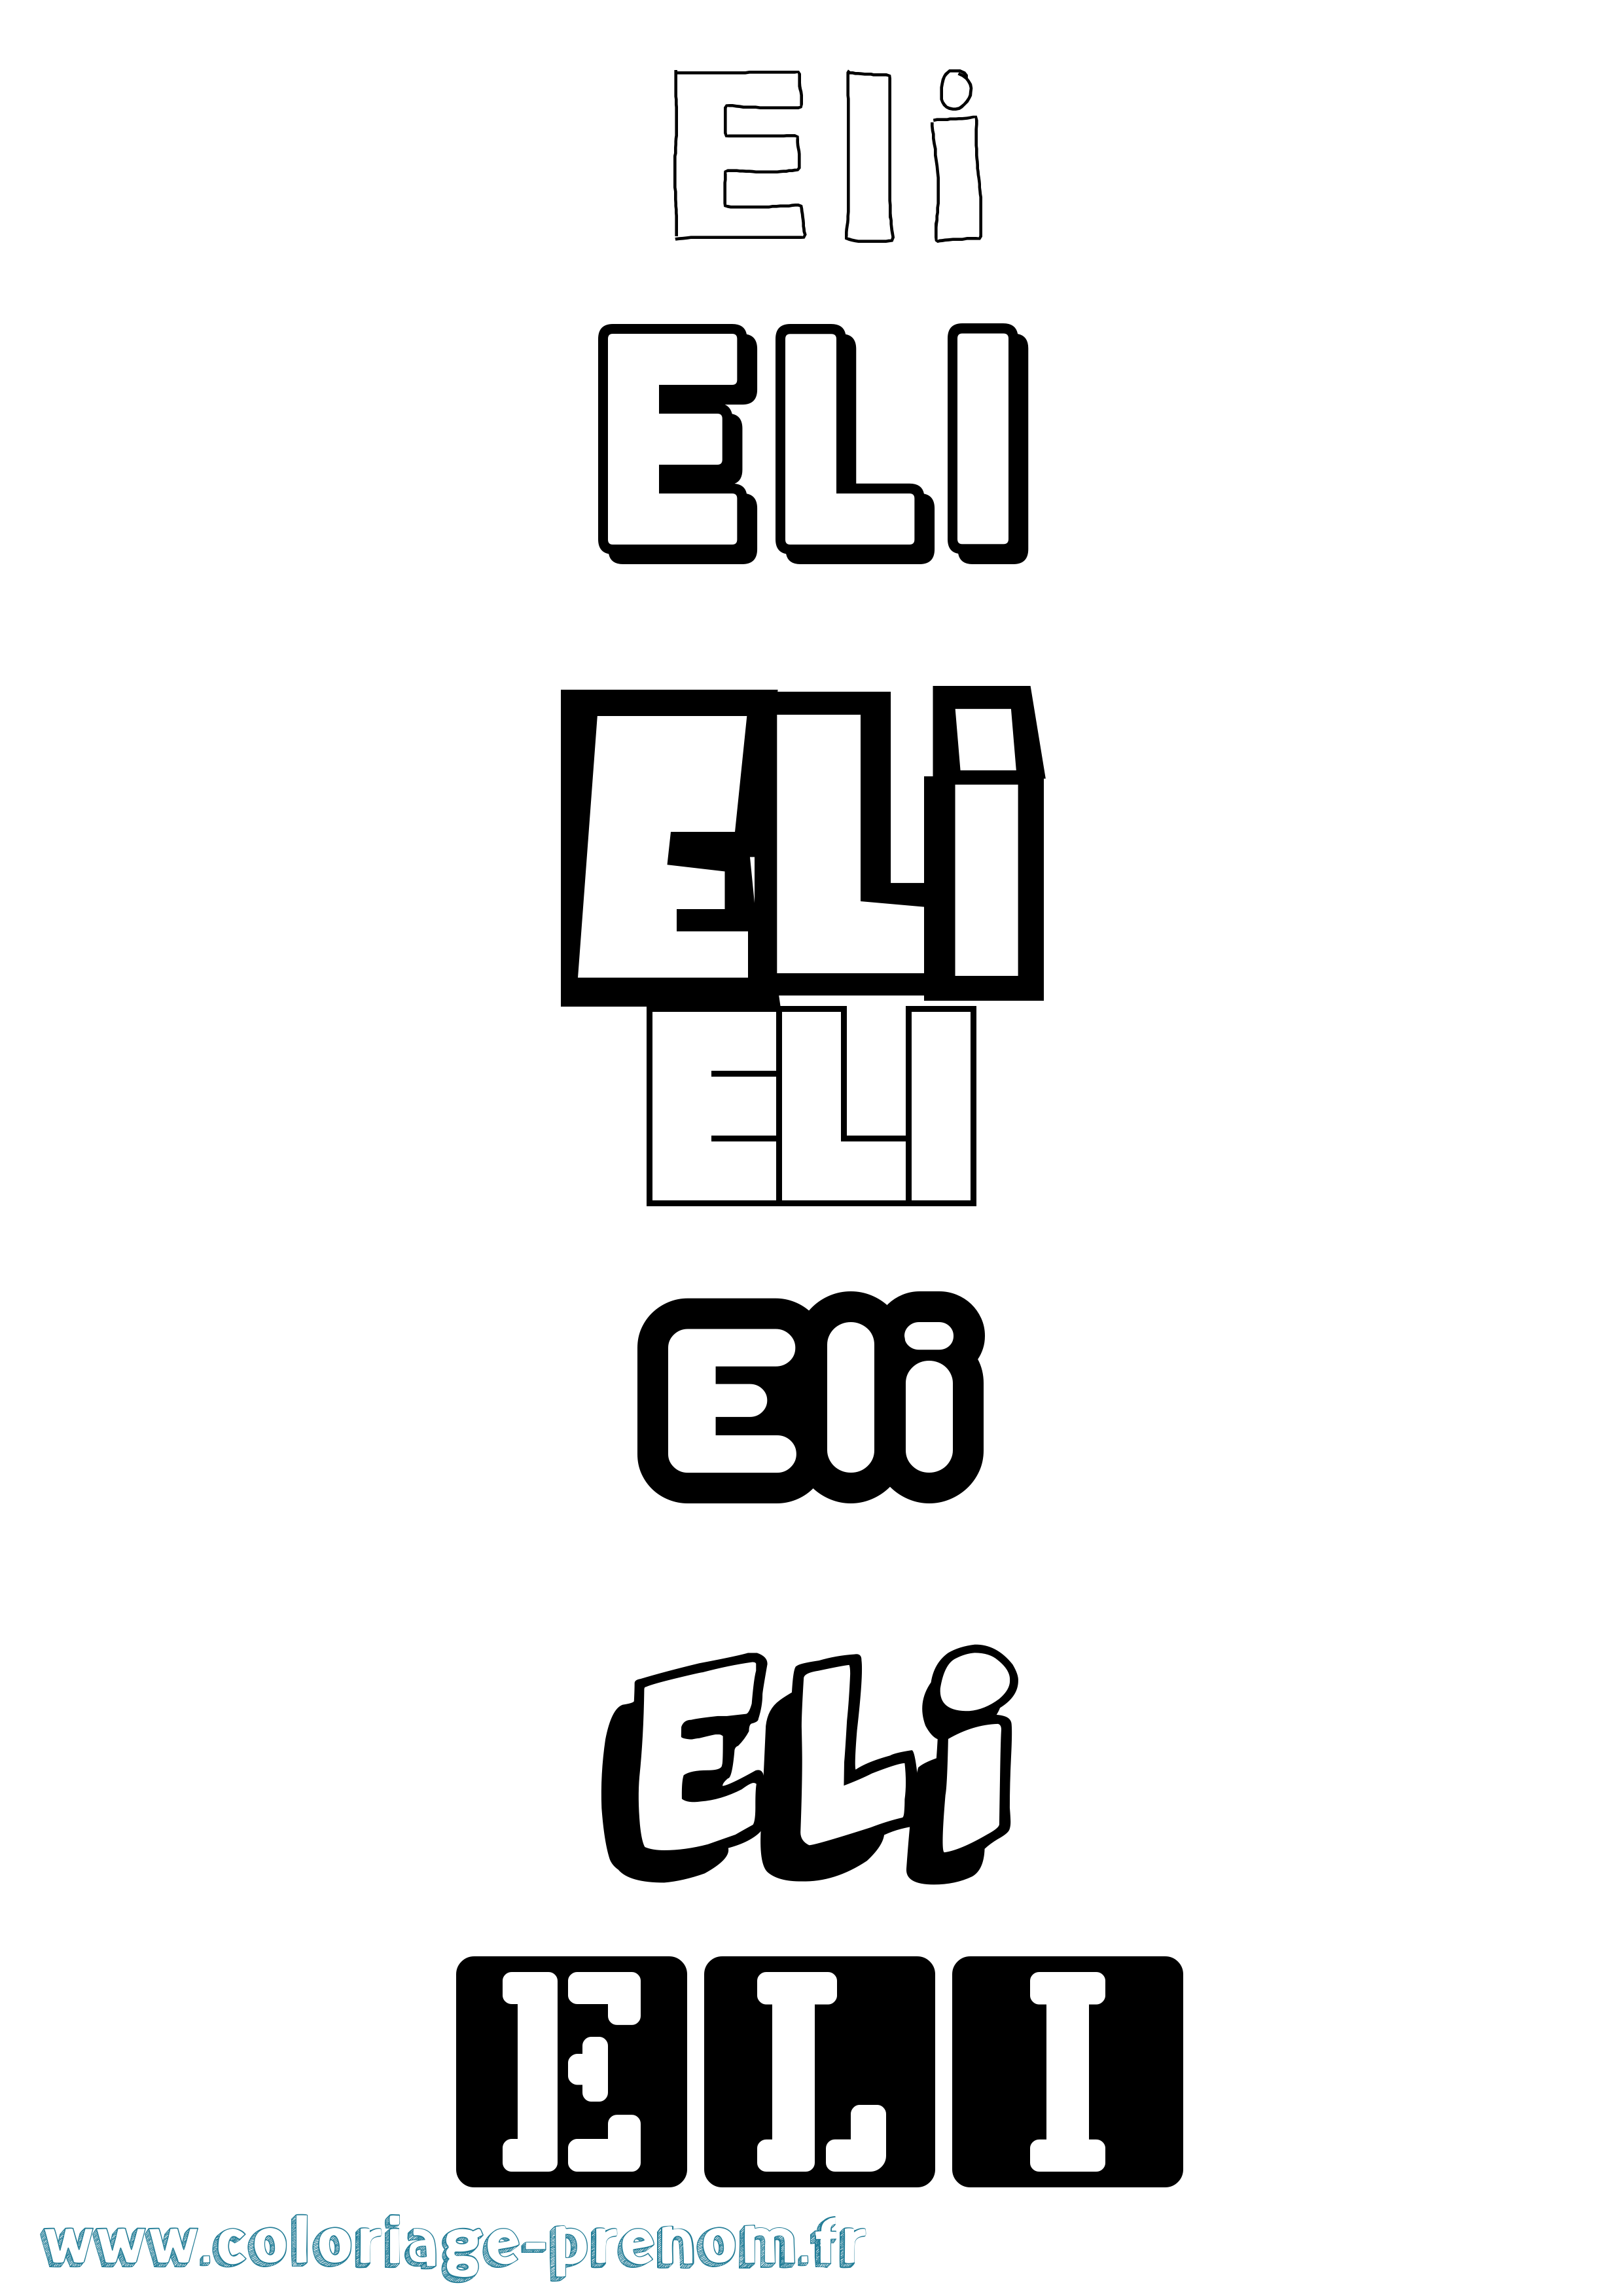 Coloriage prénom Eli